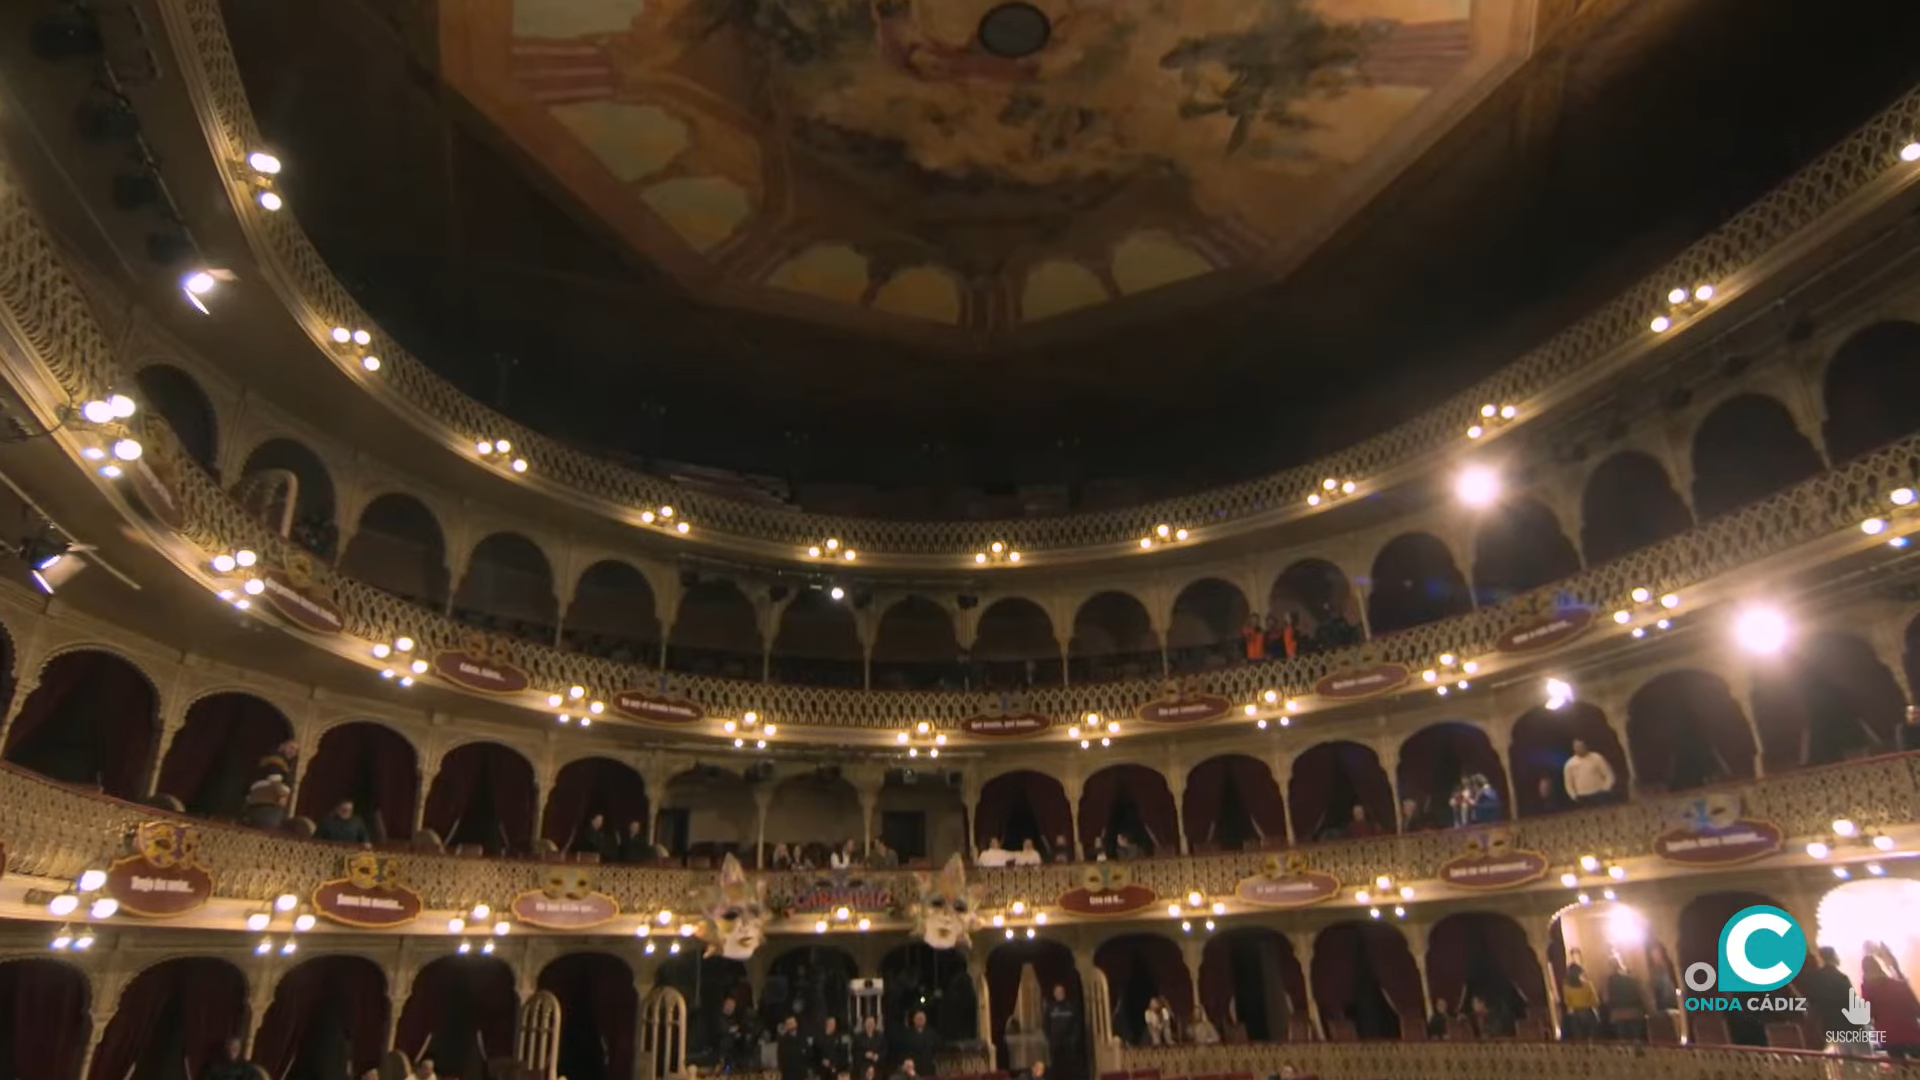 Imagen de los pisos superiores del Gran Teatro Falla.